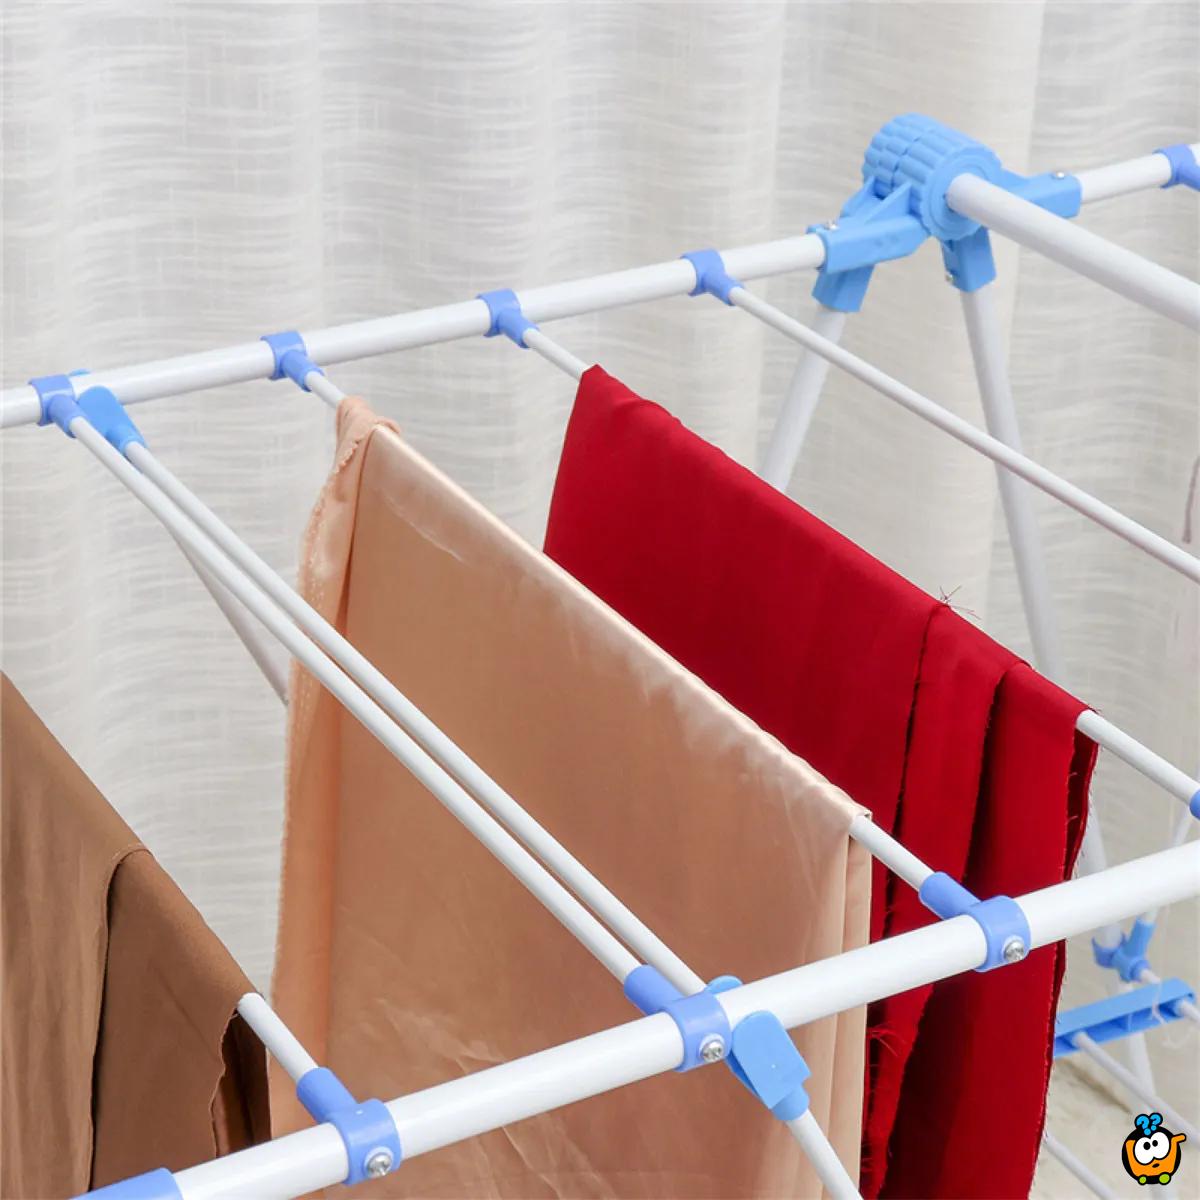 Clothes Drying Rack – Praktična sklopiva sušilica za odecu